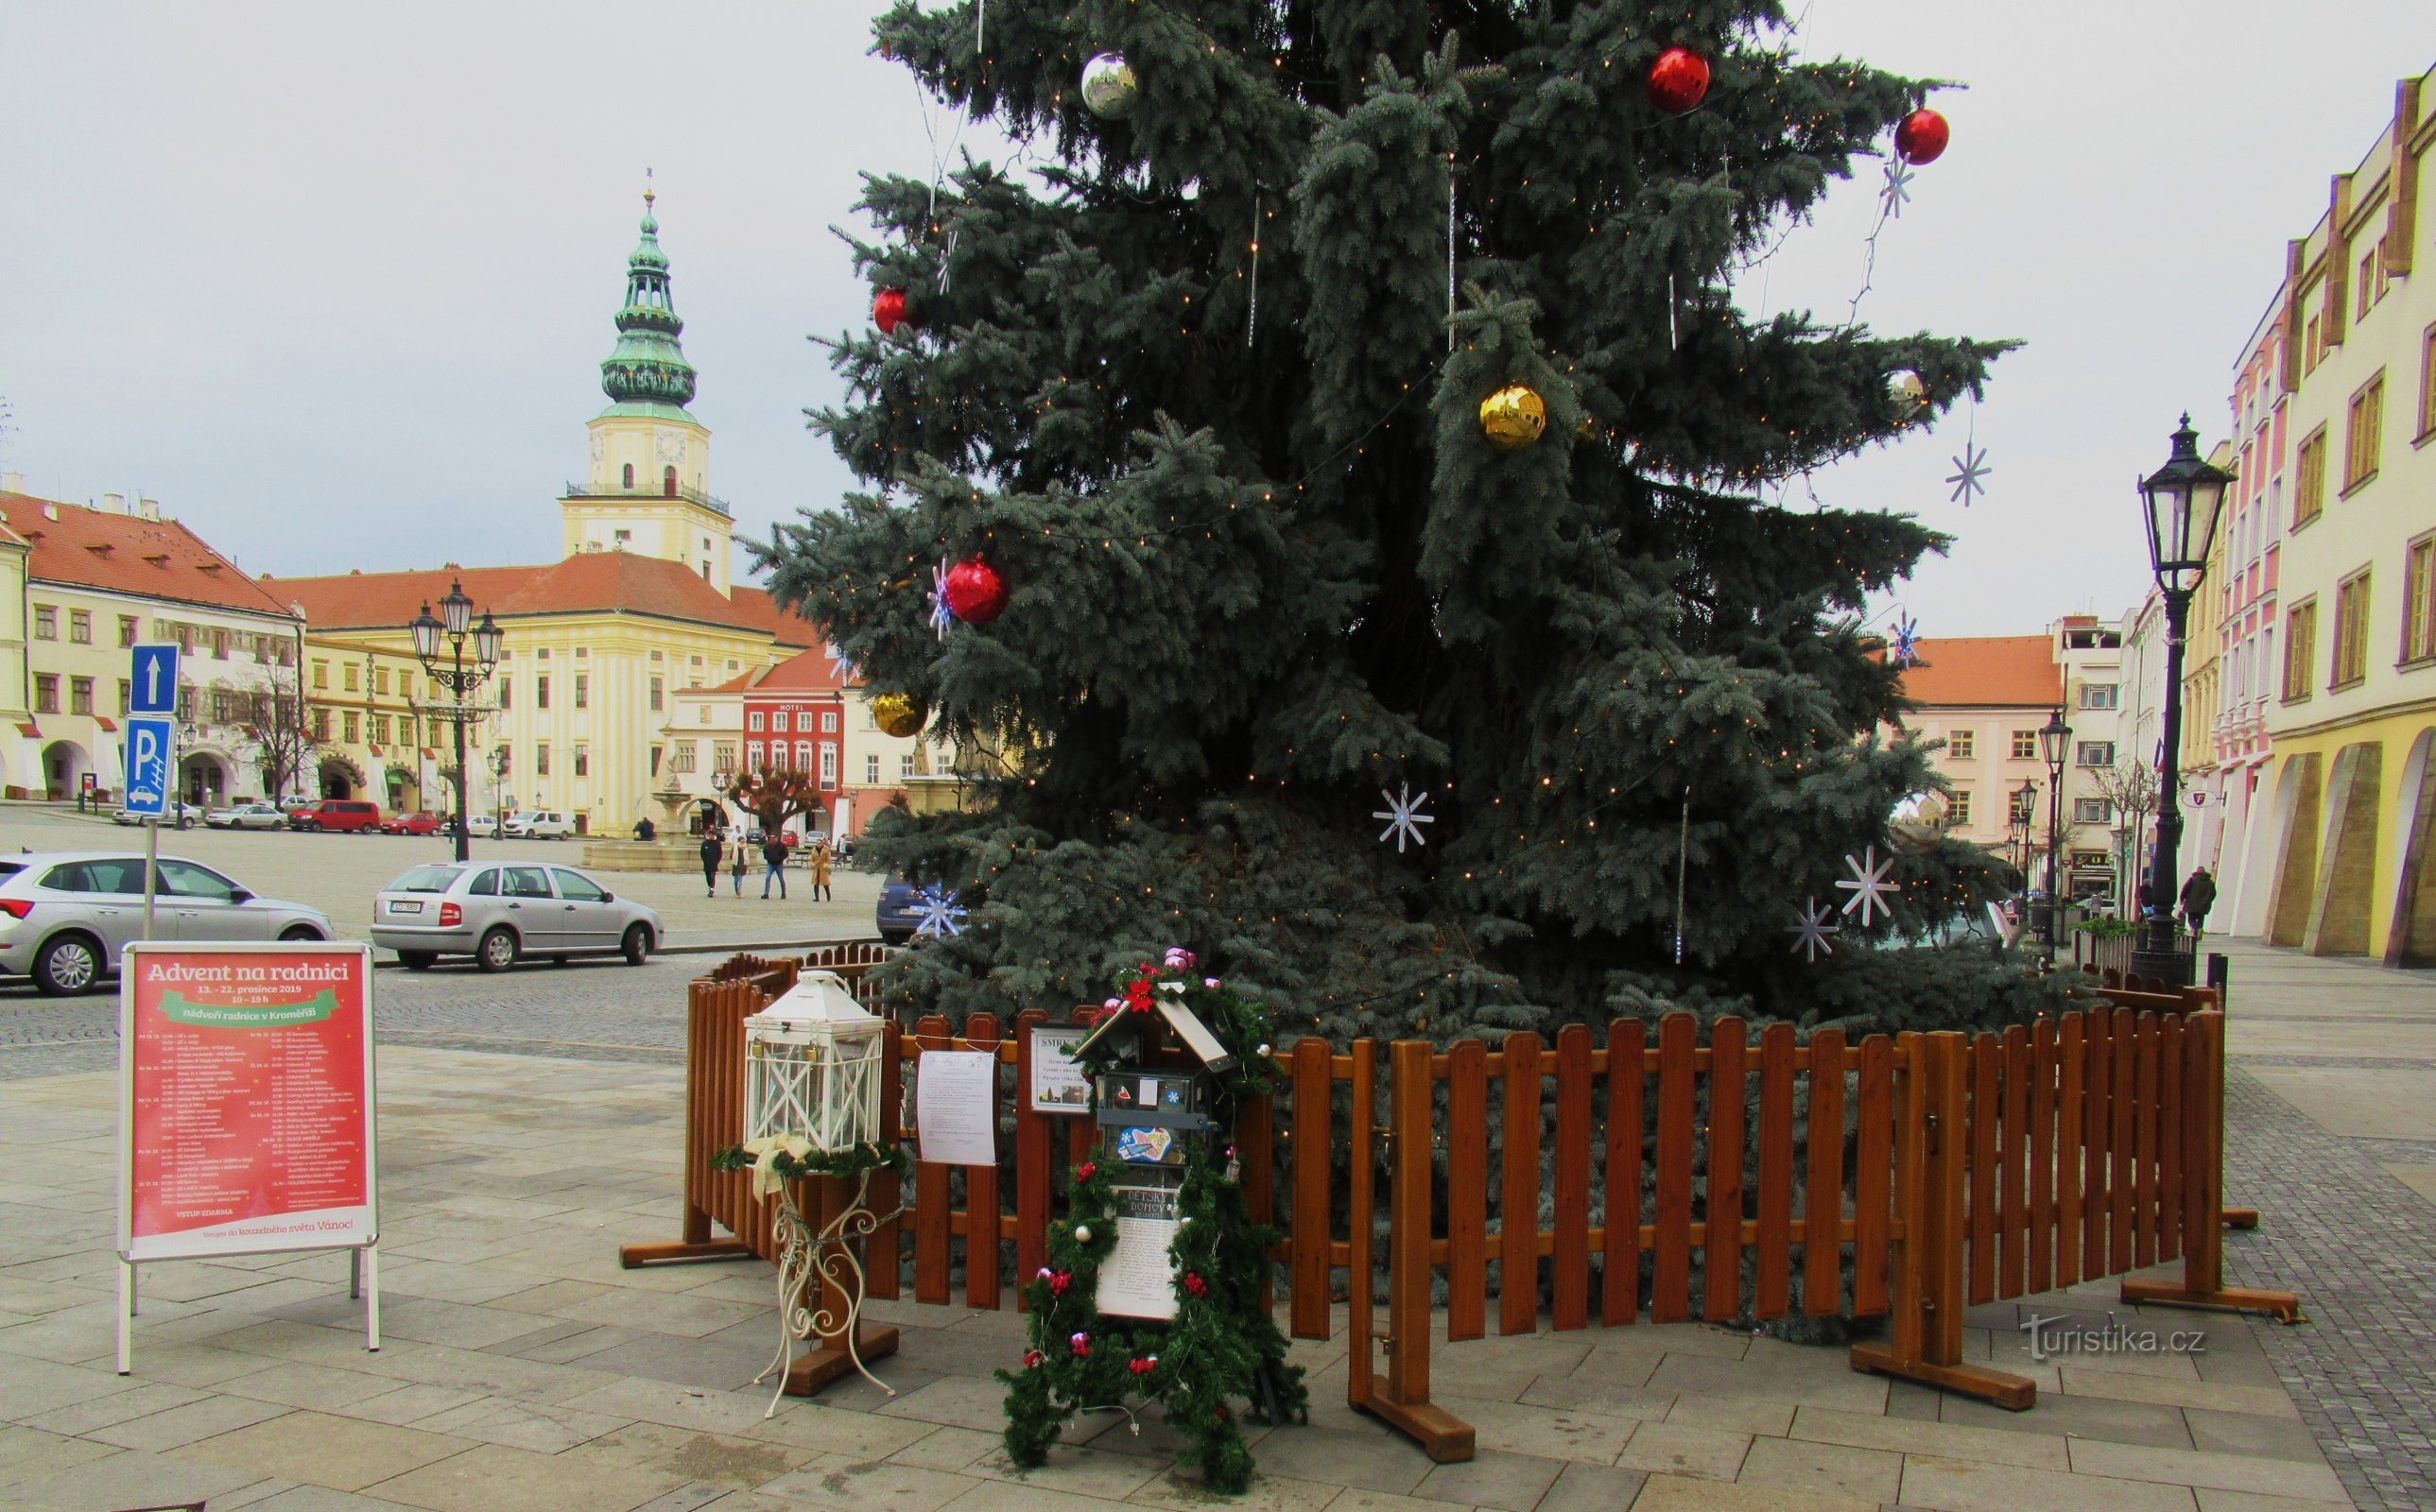 Περιήγηση με τα πόδια στην πόλη Kroměříž